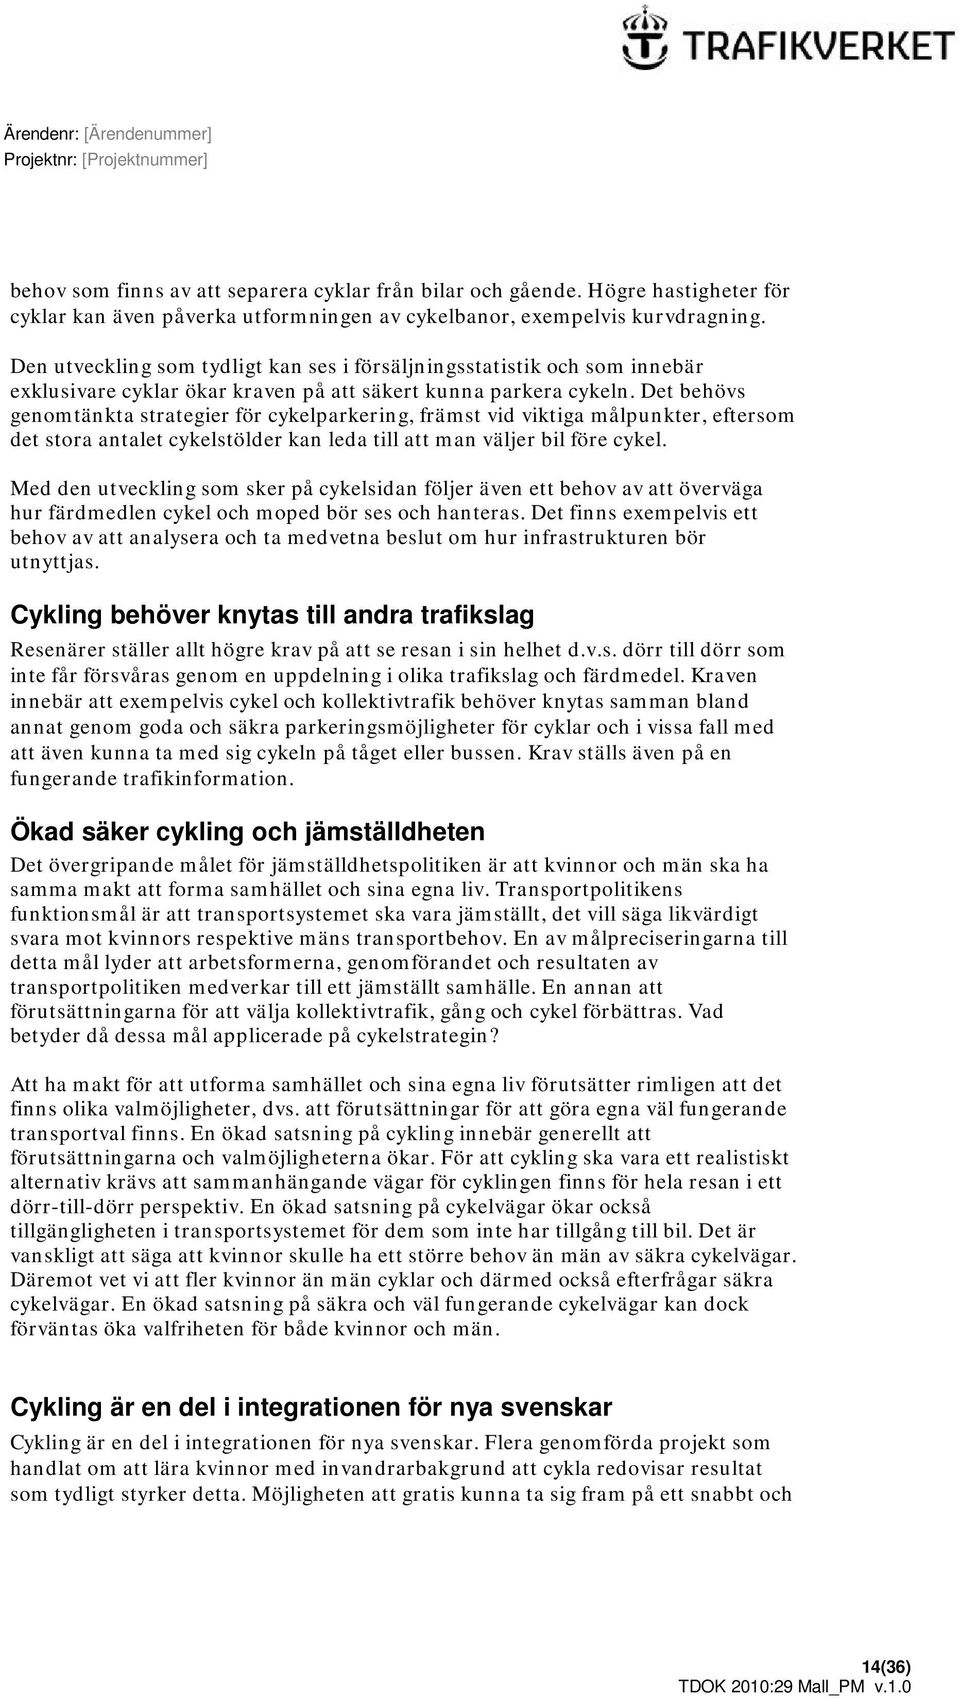 Det behövs genomtänkta strategier för cykelparkering, främst vid viktiga målpunkter, eftersom det stora antalet cykelstölder kan leda till att man väljer bil före cykel.